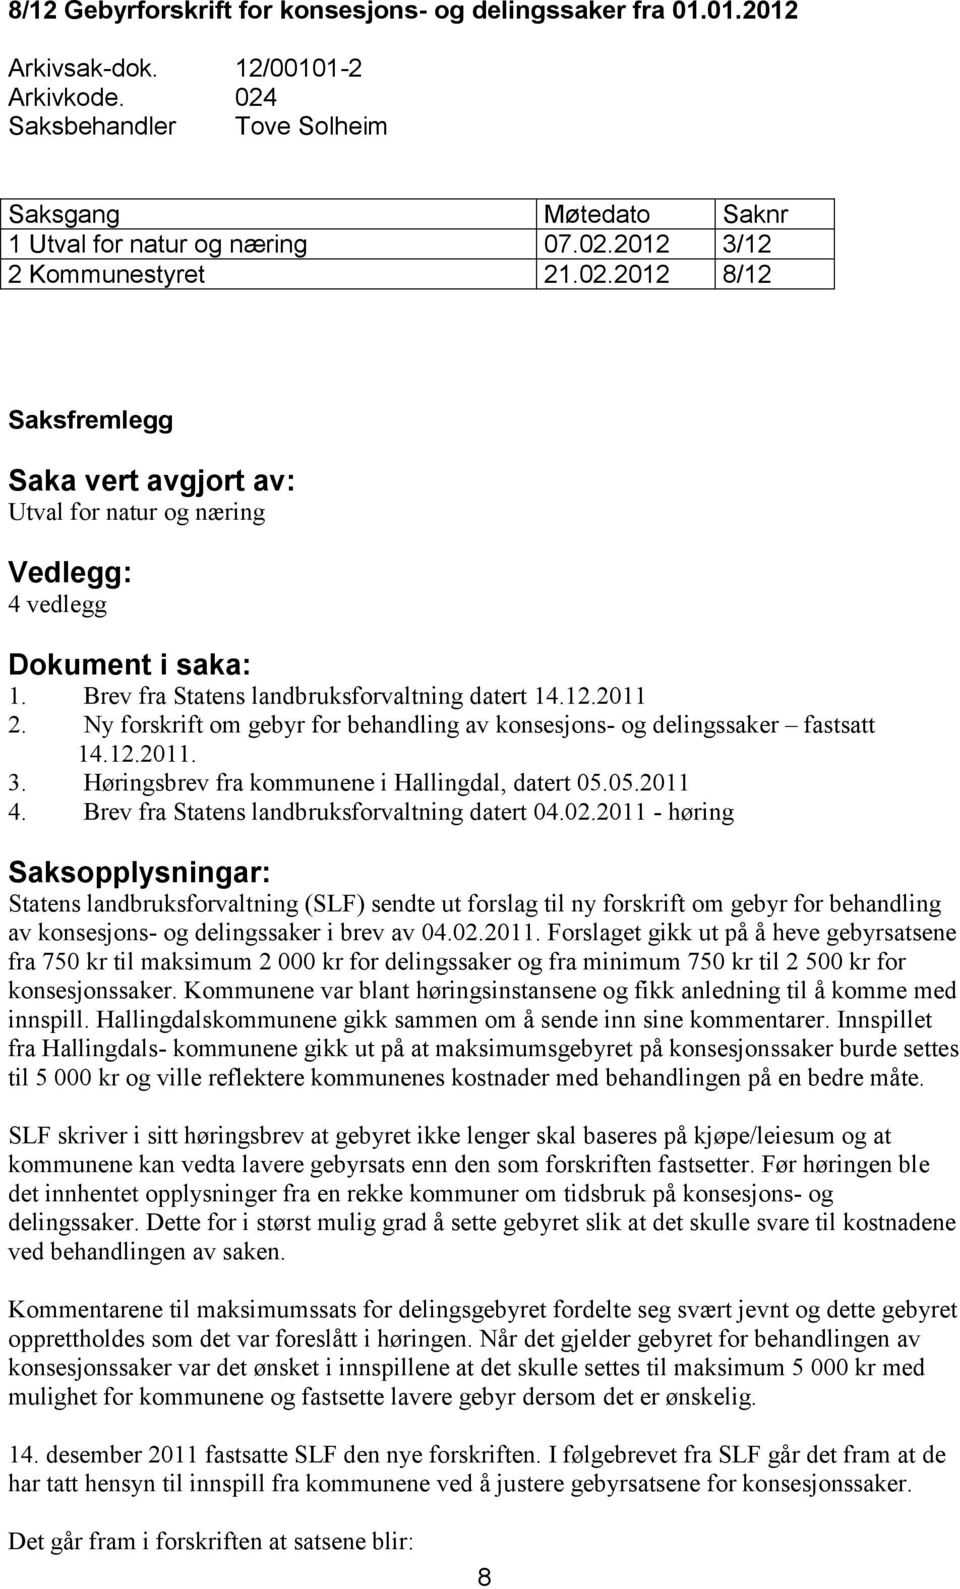 Brev fra Statens landbruksforvaltning datert 14.12.2011 2. Ny forskrift om gebyr for behandling av konsesjons- og delingssaker fastsatt 14.12.2011. 3.